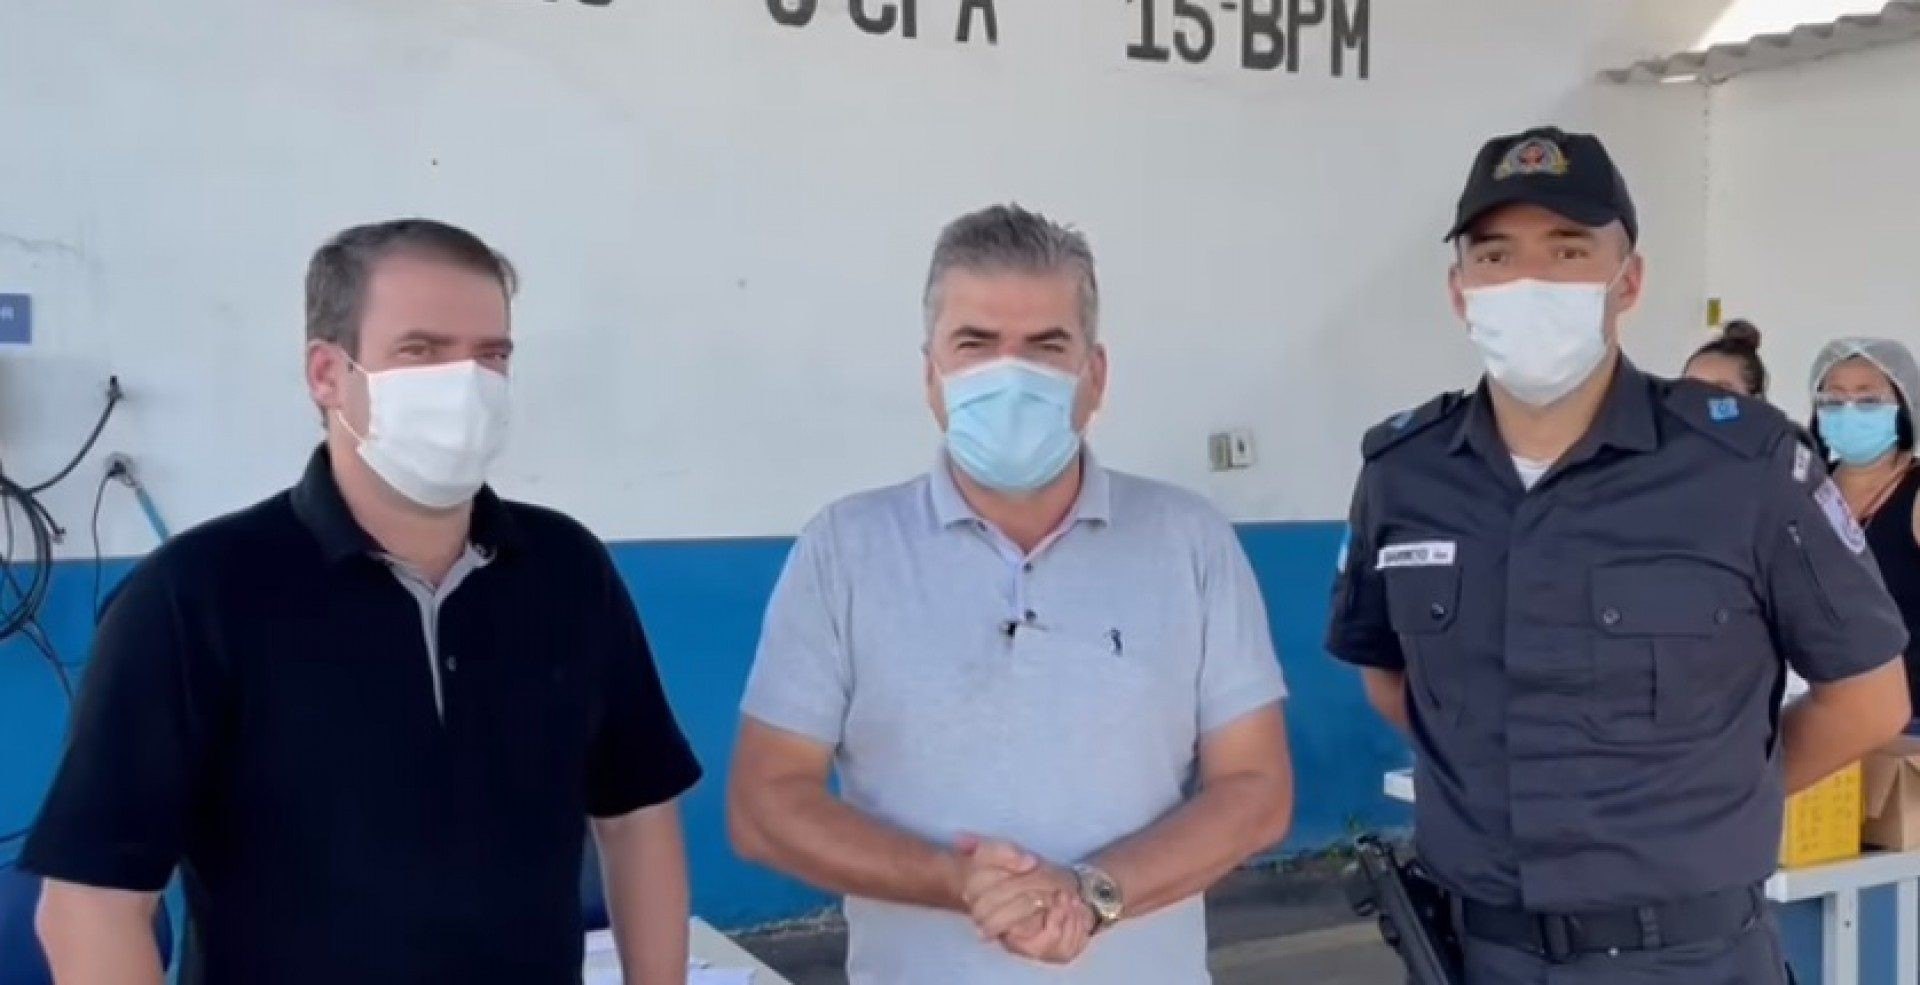 Policiais de Duque de Caxias serão vacinados contra a Covid-19 - Reprodução vídeo